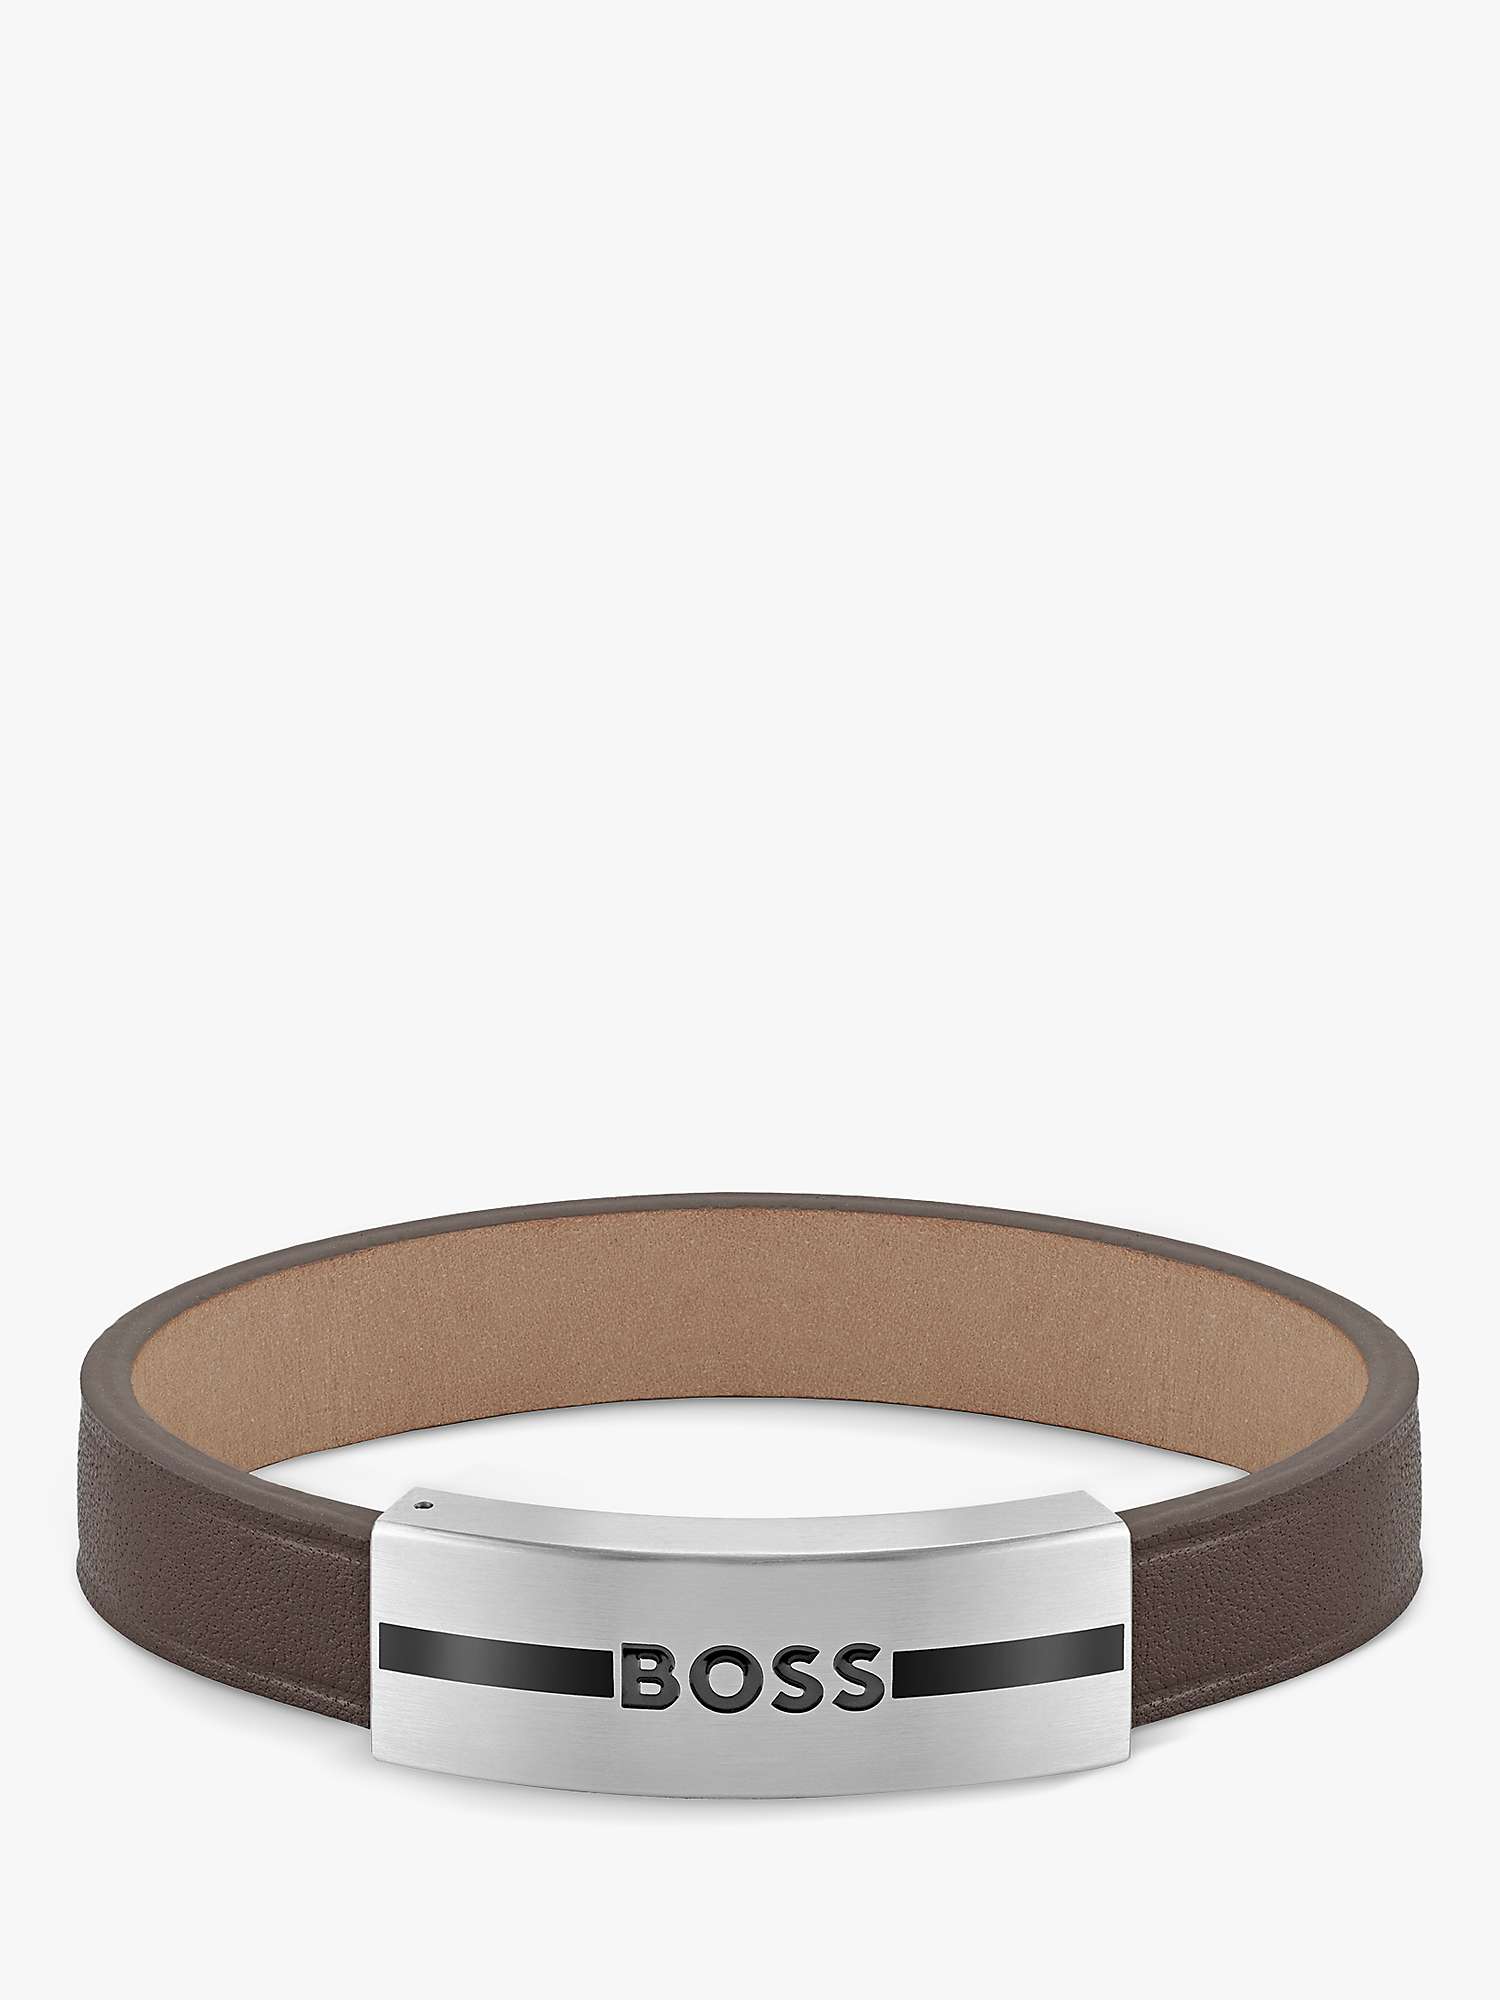 Buy BOSS Men's Luke Leather Bracelet Online at johnlewis.com